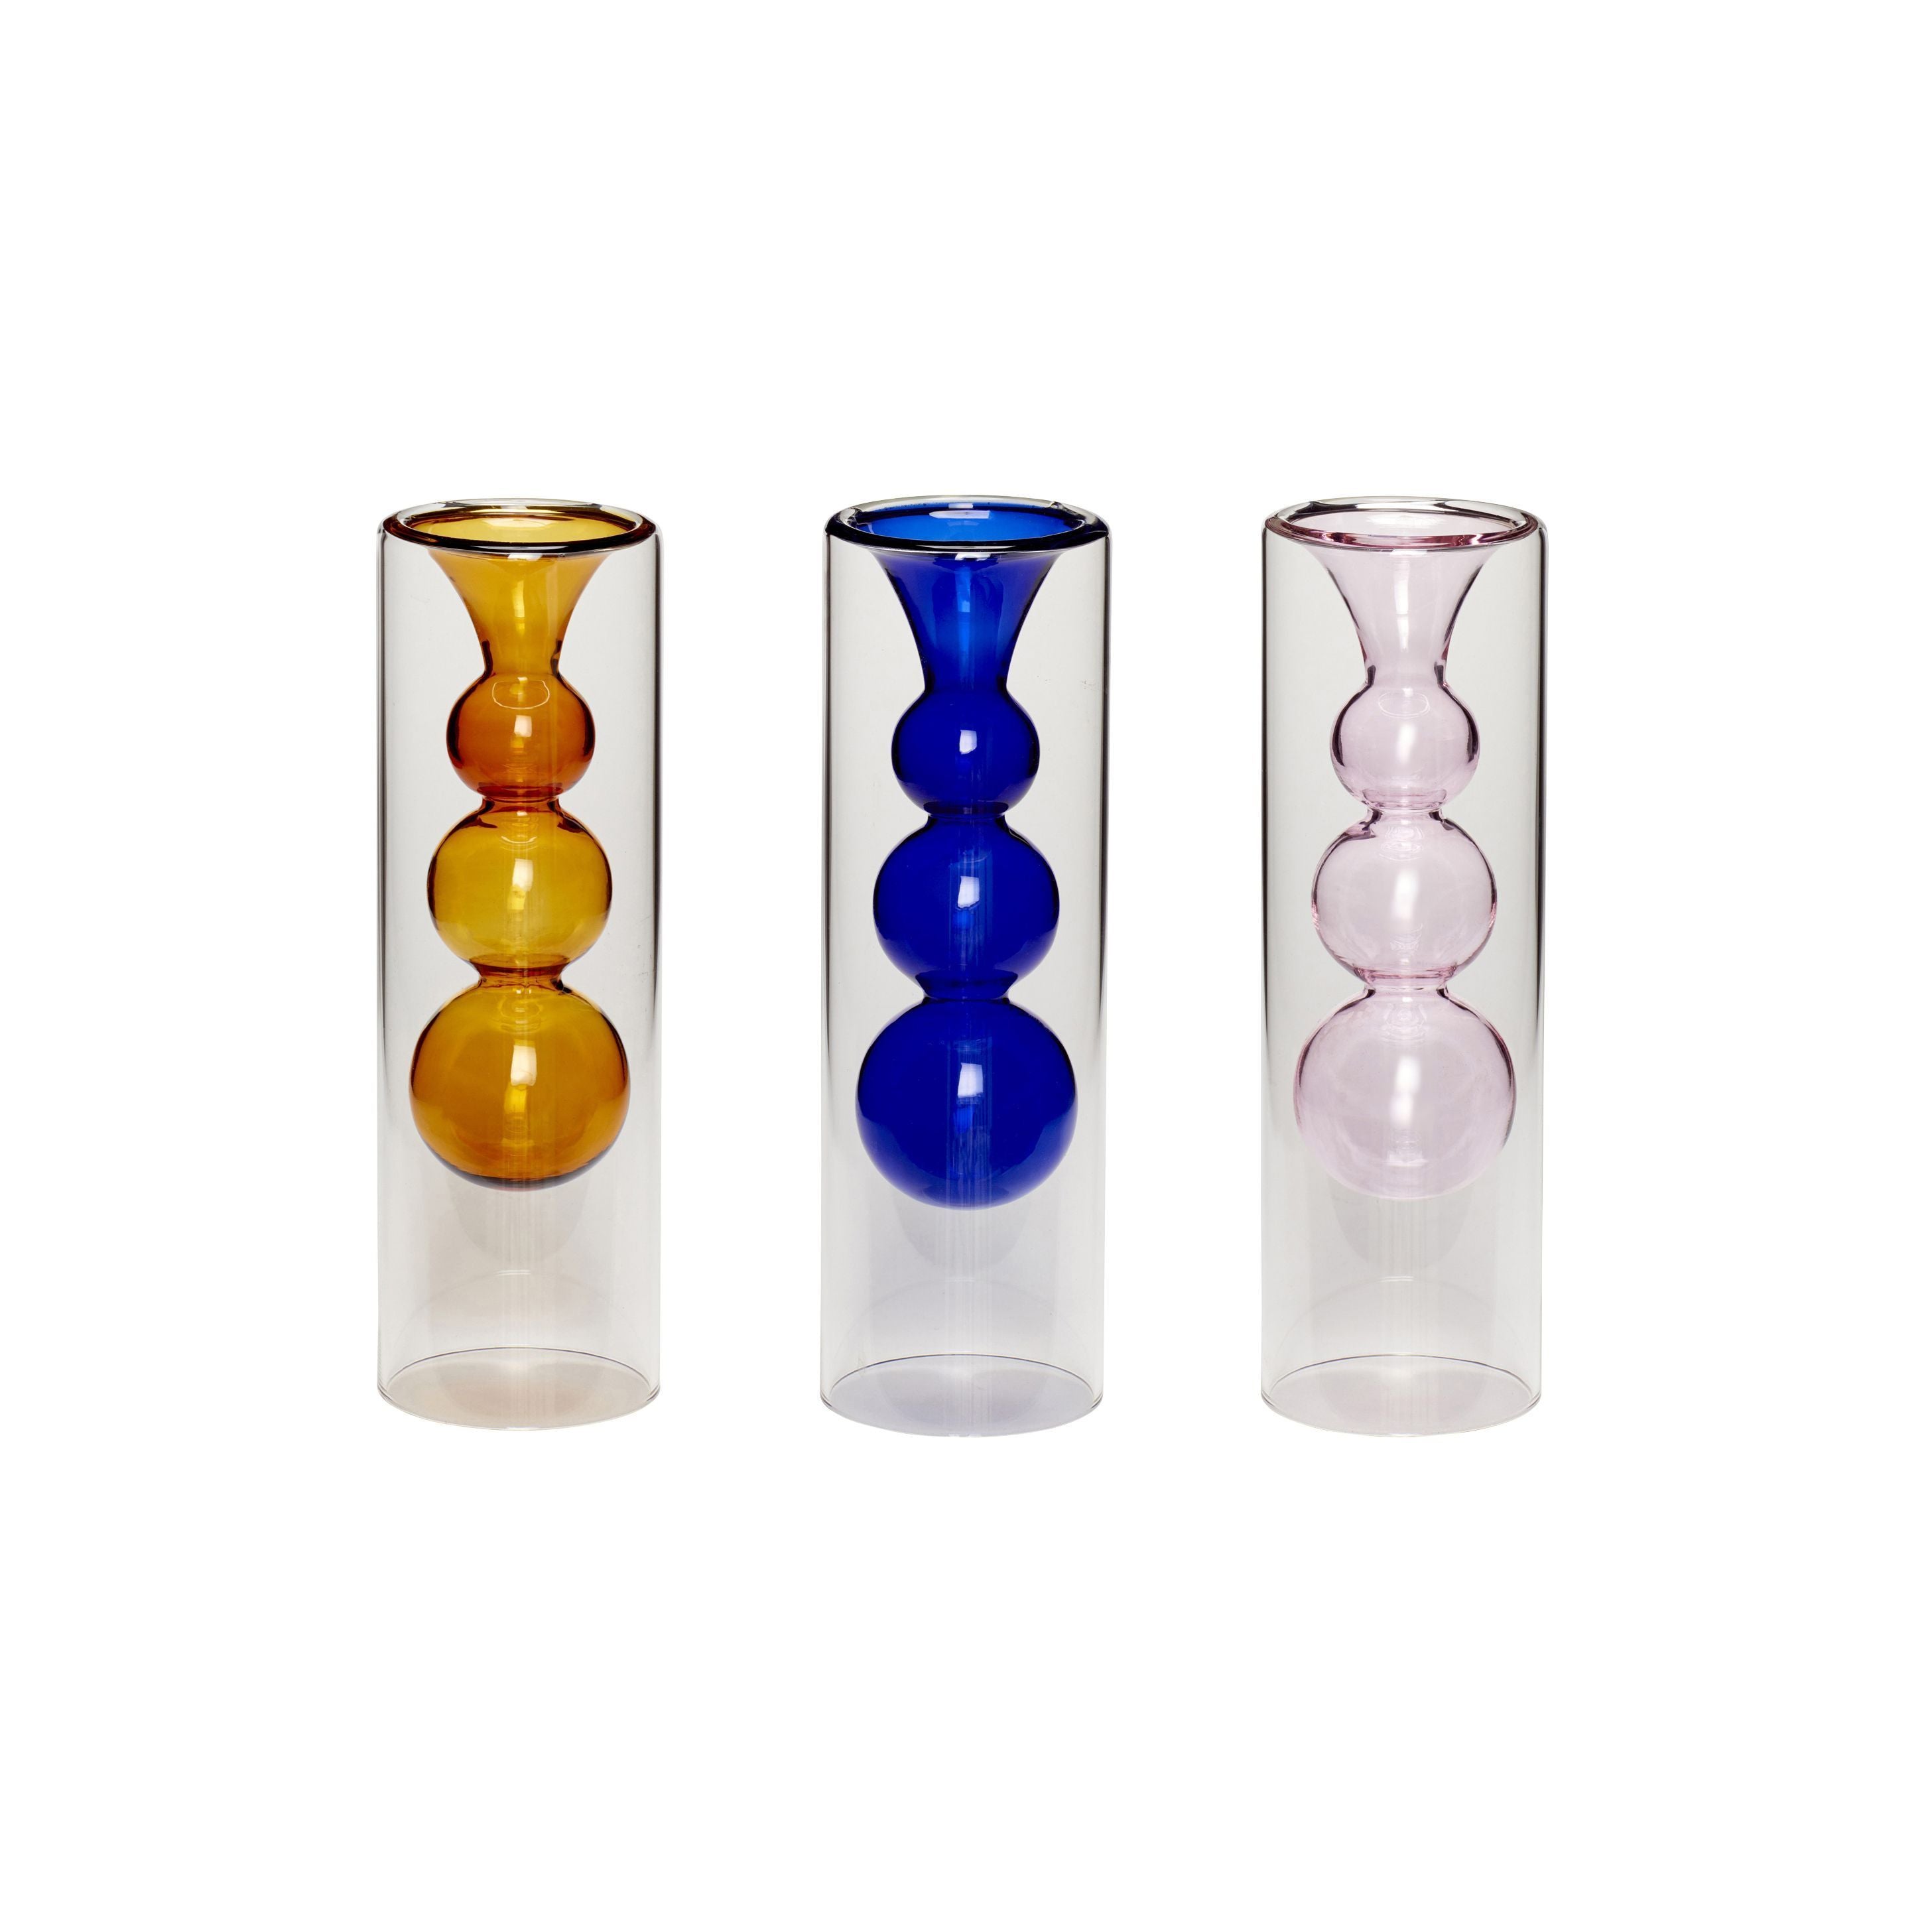 HübschPlay花瓶玻璃琥珀色/蓝色/粉红色的3套